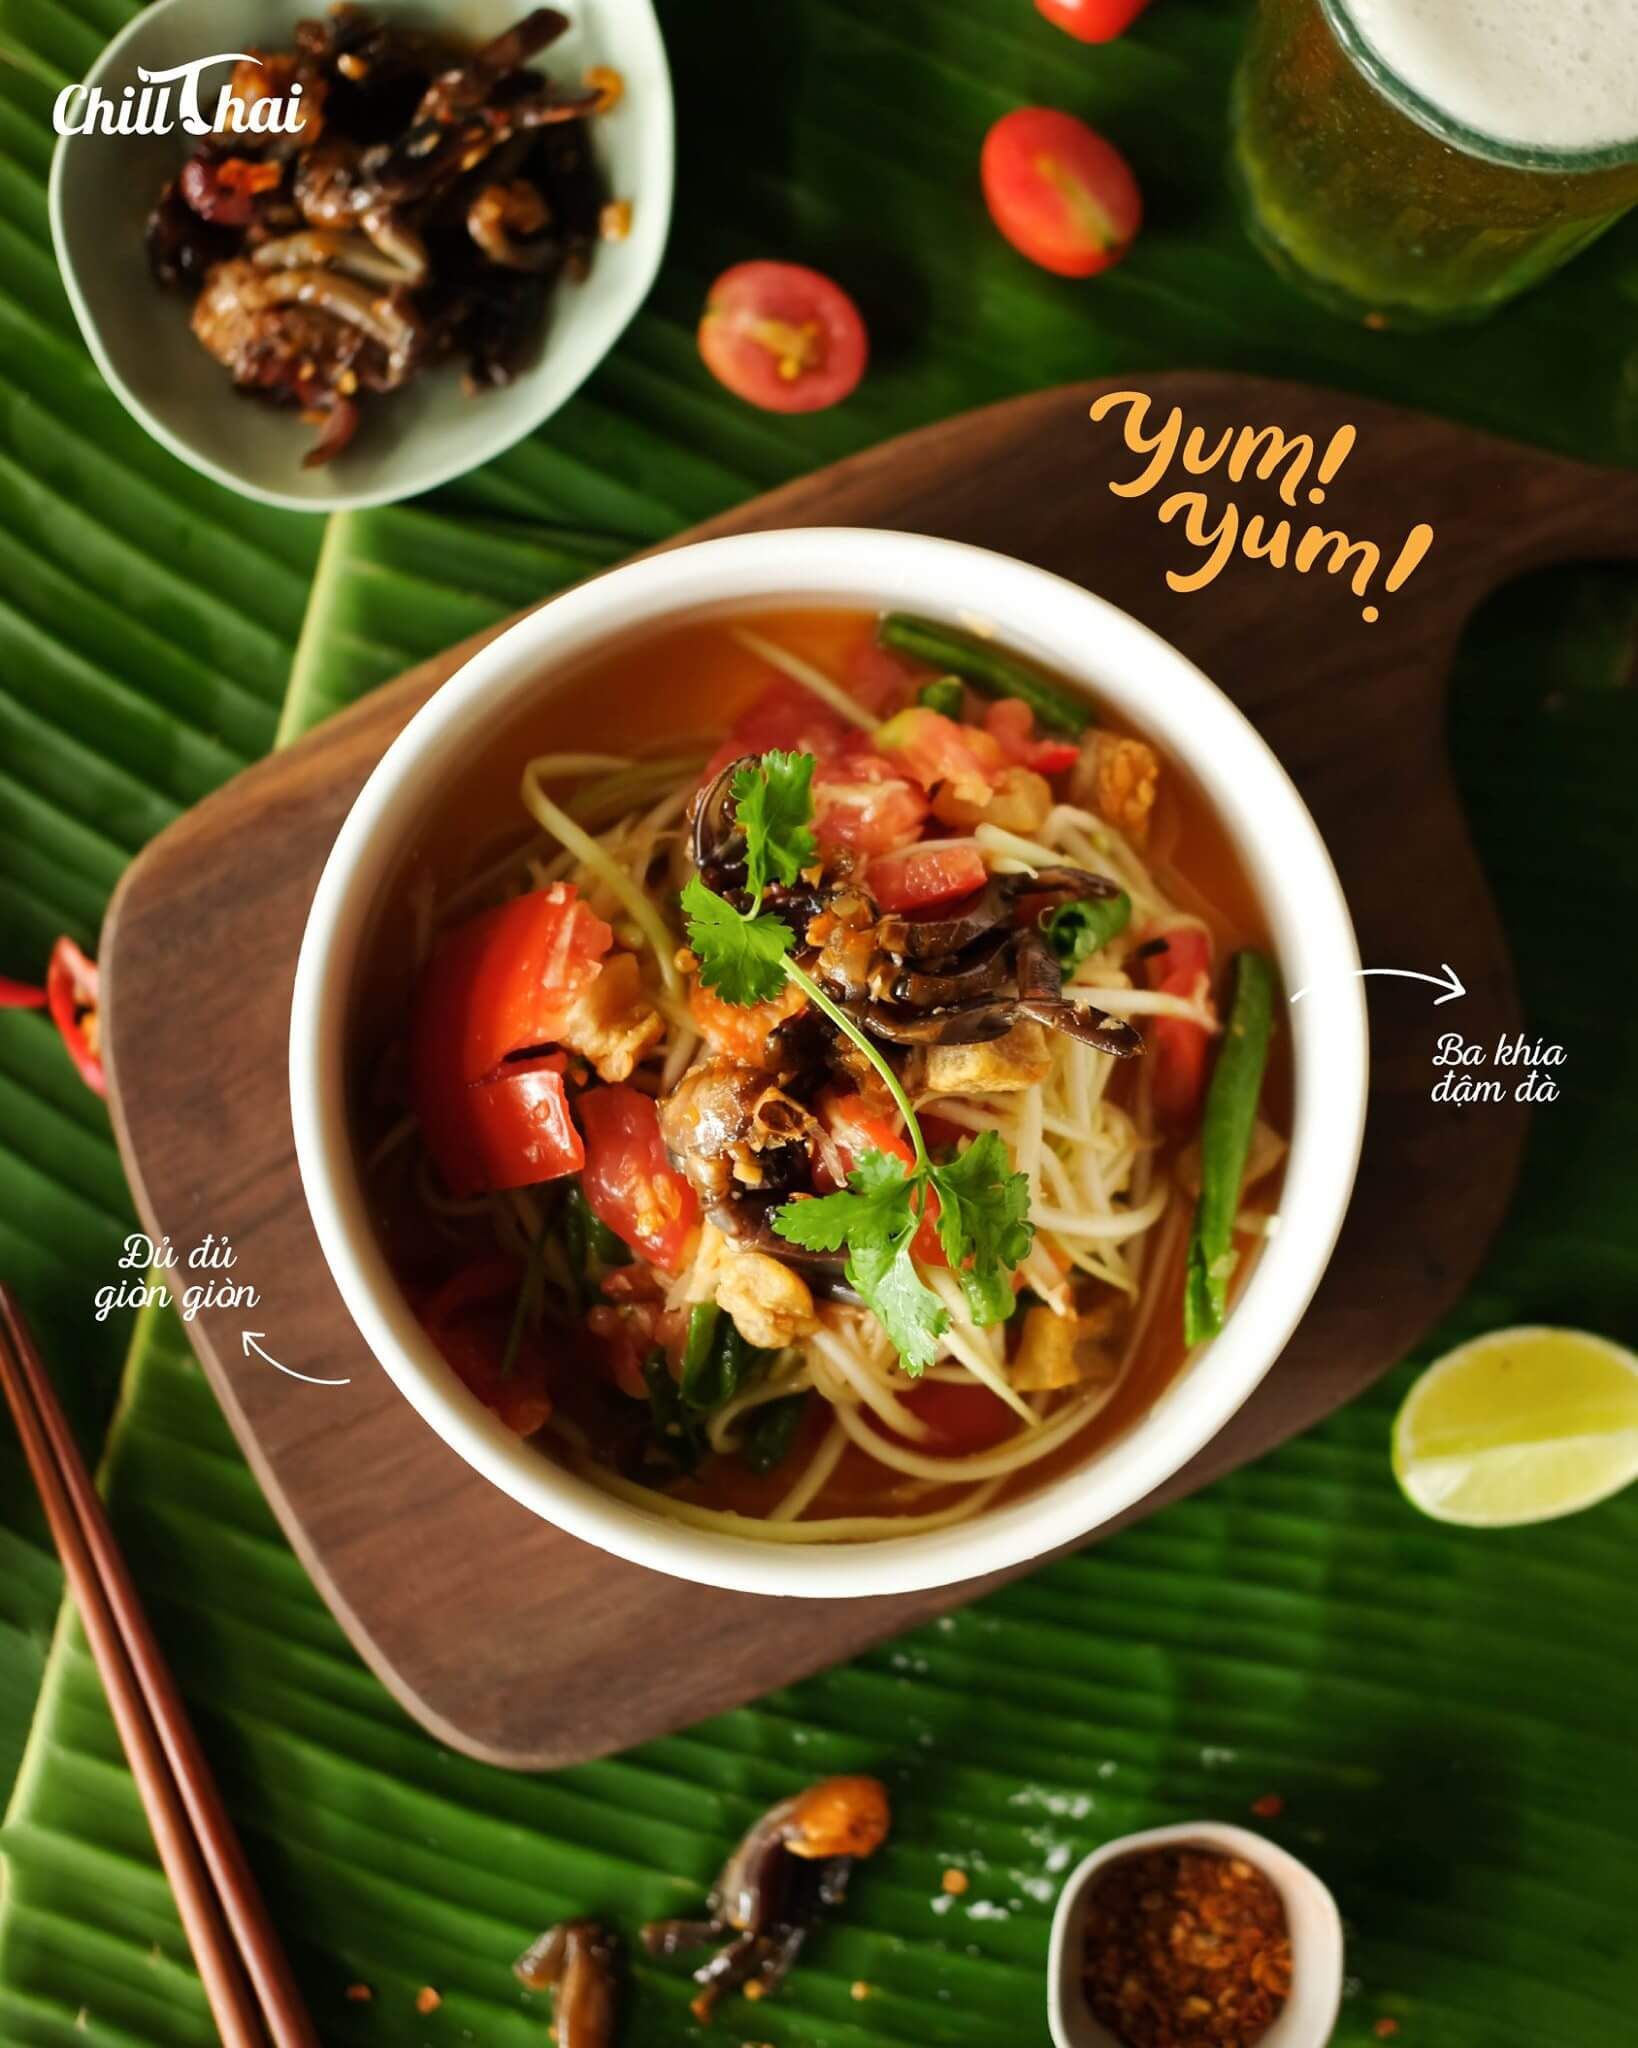 Chill Thai - Thai Food - Cô Giang